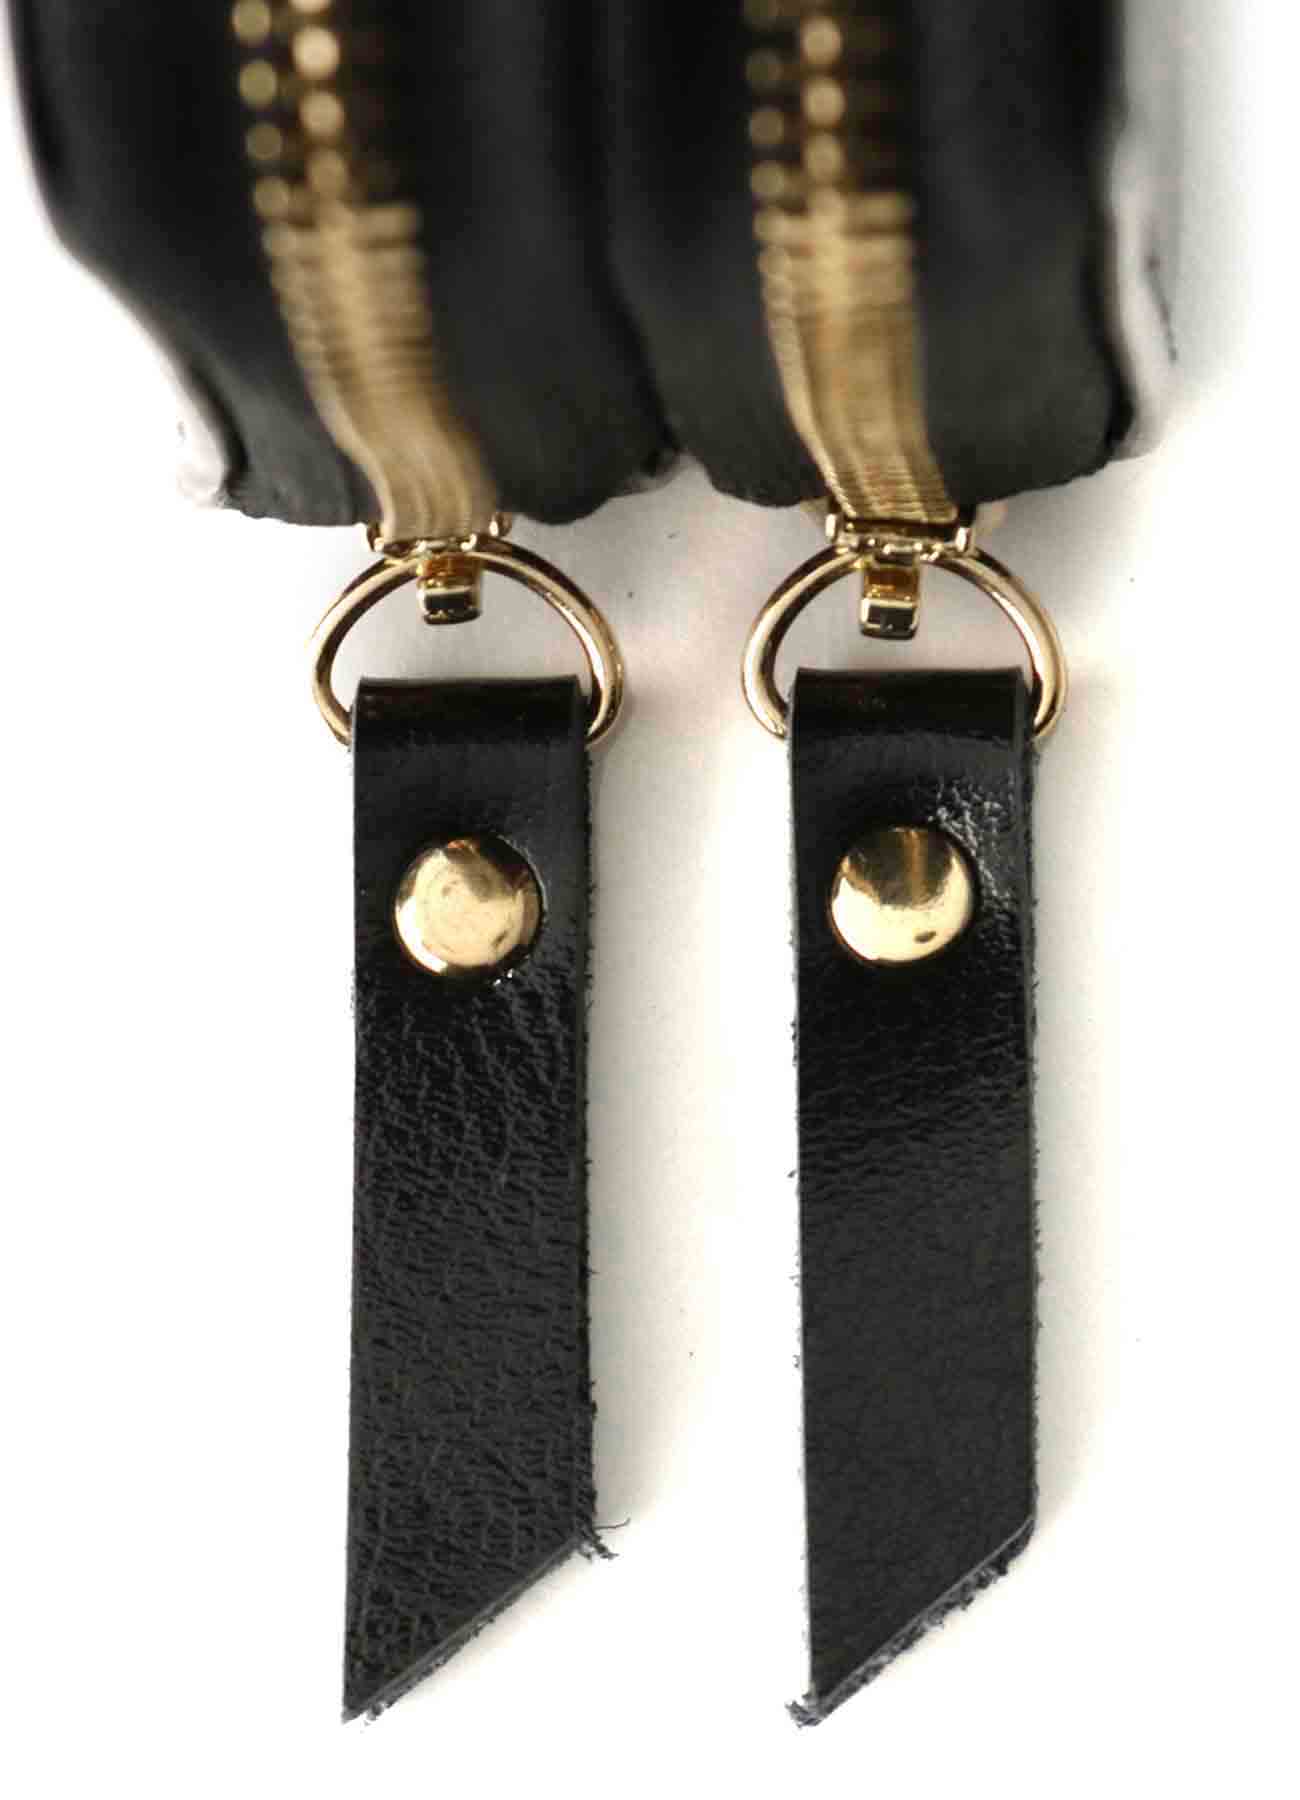 Split Leather Zipper Wallet